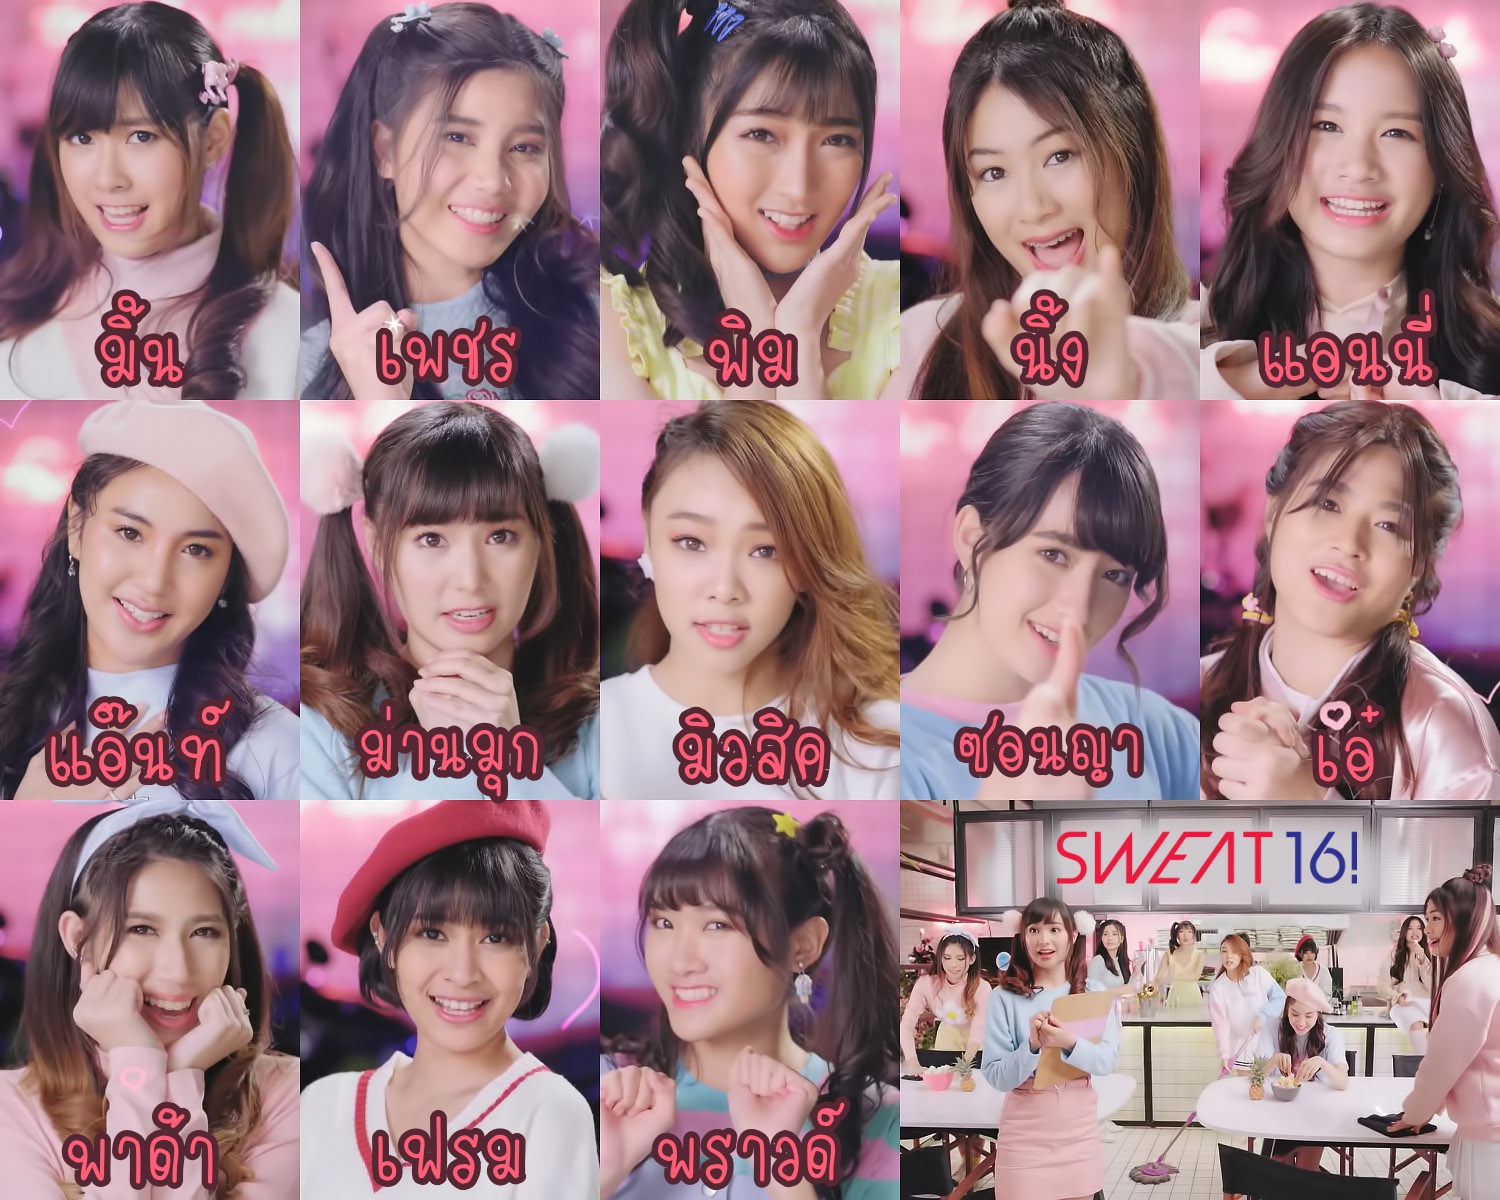 ทำความรู้จัก 13 สาว Sweat16! ไอดอลกรุ๊ปใหม่ จาก LOVEiS และ Yoshimoto - Pantip